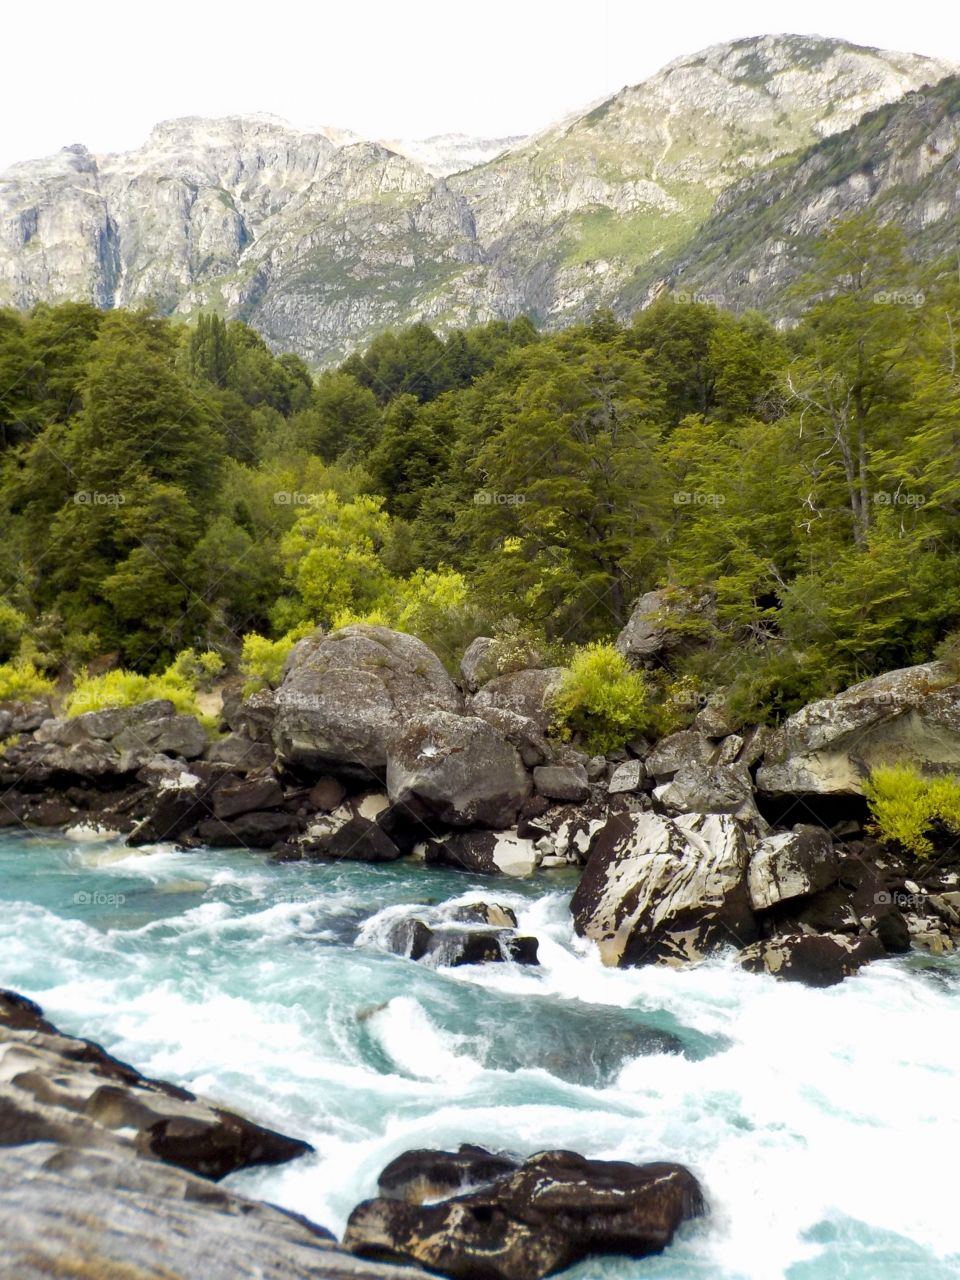 Futalafu river, Patagonia, Chile 